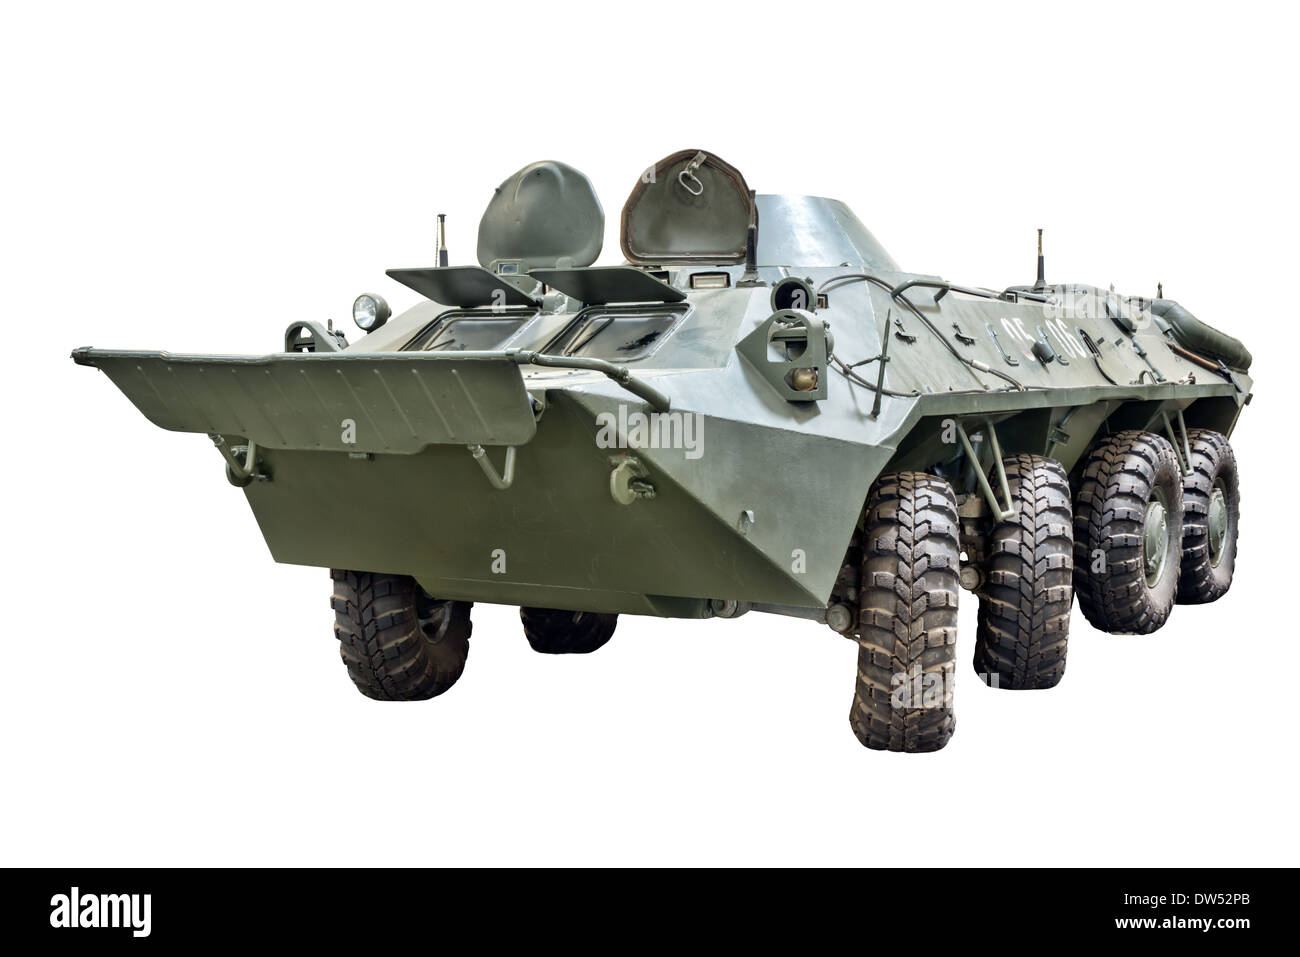 Une coupe d'un BTR Soviétique 70 armoured personnel carrier utilisé par les forces russes et d'autres armées du Pacte de Varsovie Banque D'Images